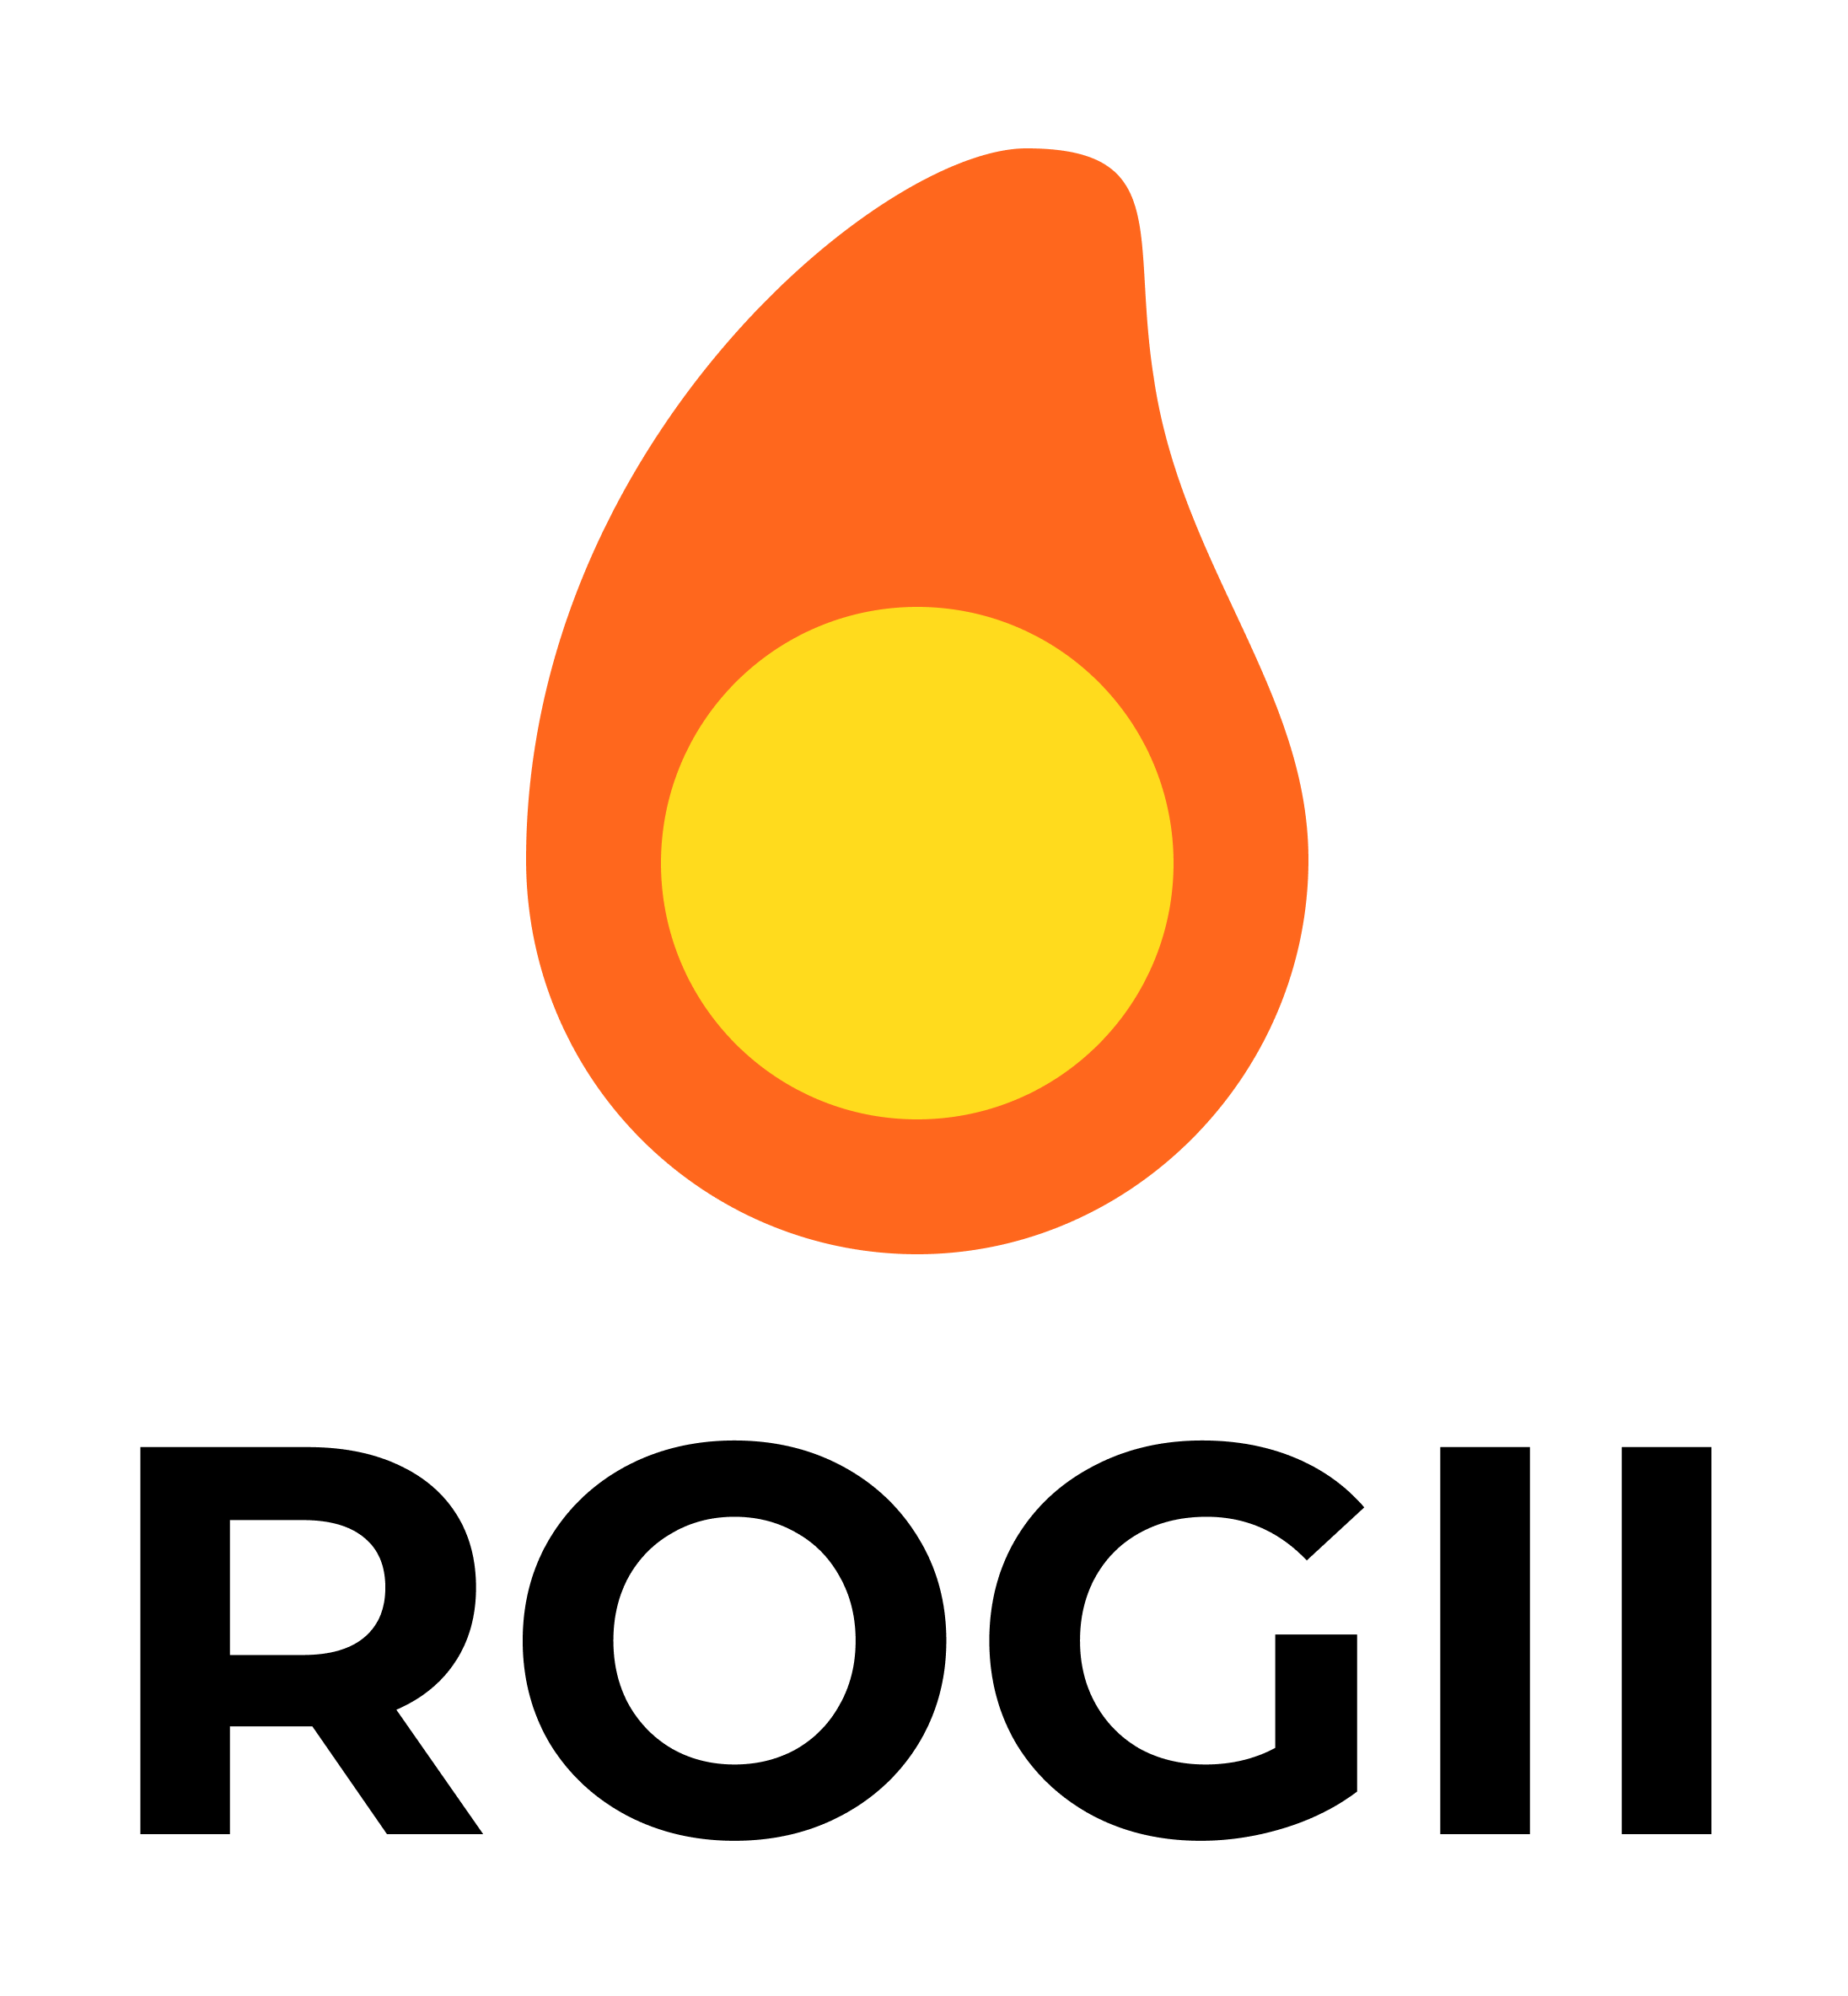 ROGII logo, confirmed until 2025-03-25